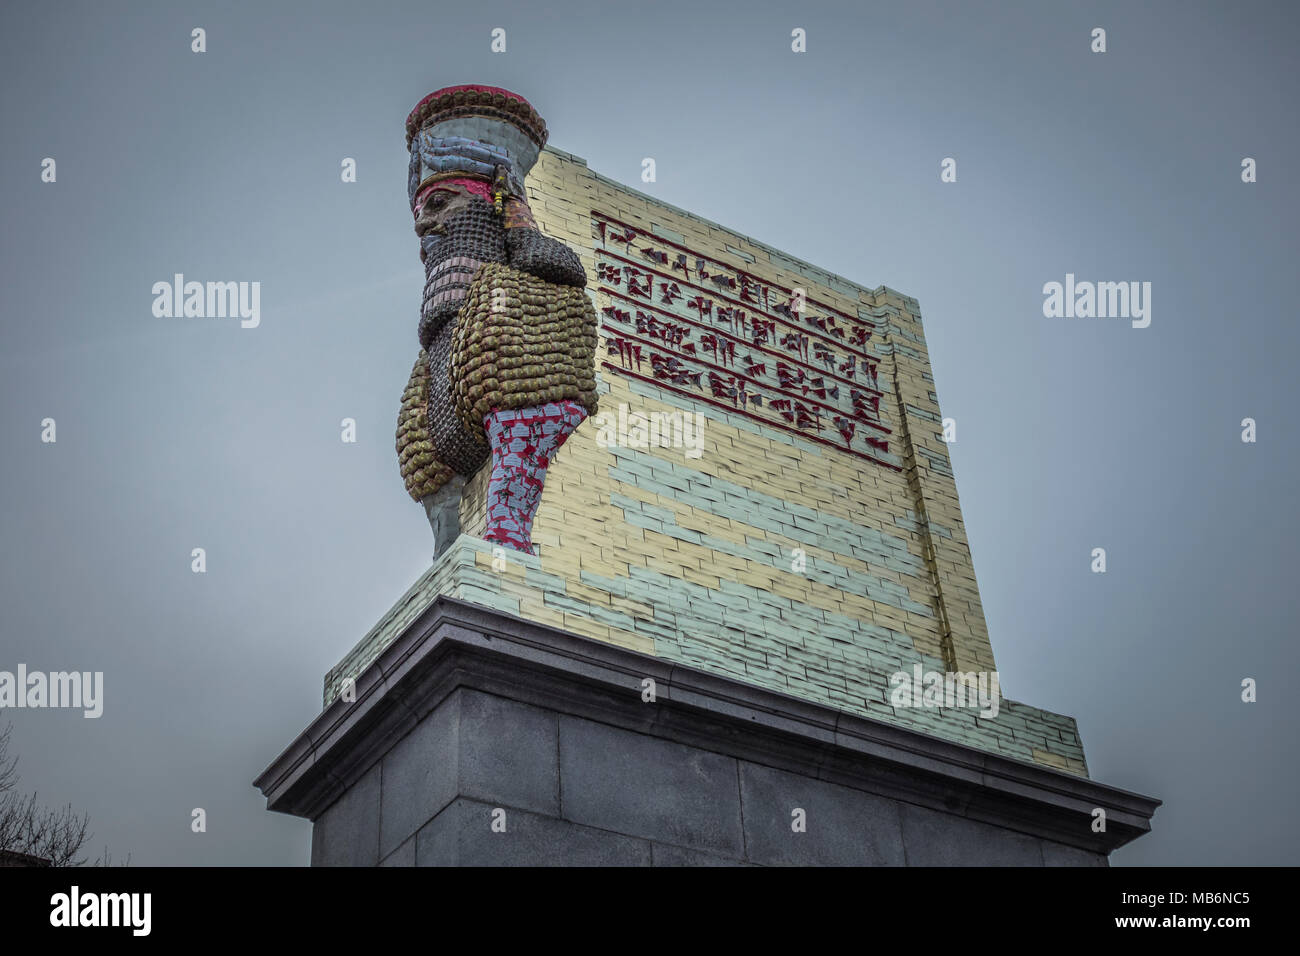 Michael Rakowitz "der unsichtbare Feind sollte nicht auf den vierten Sockel, Trafalgar Square, London, UK Stockfoto